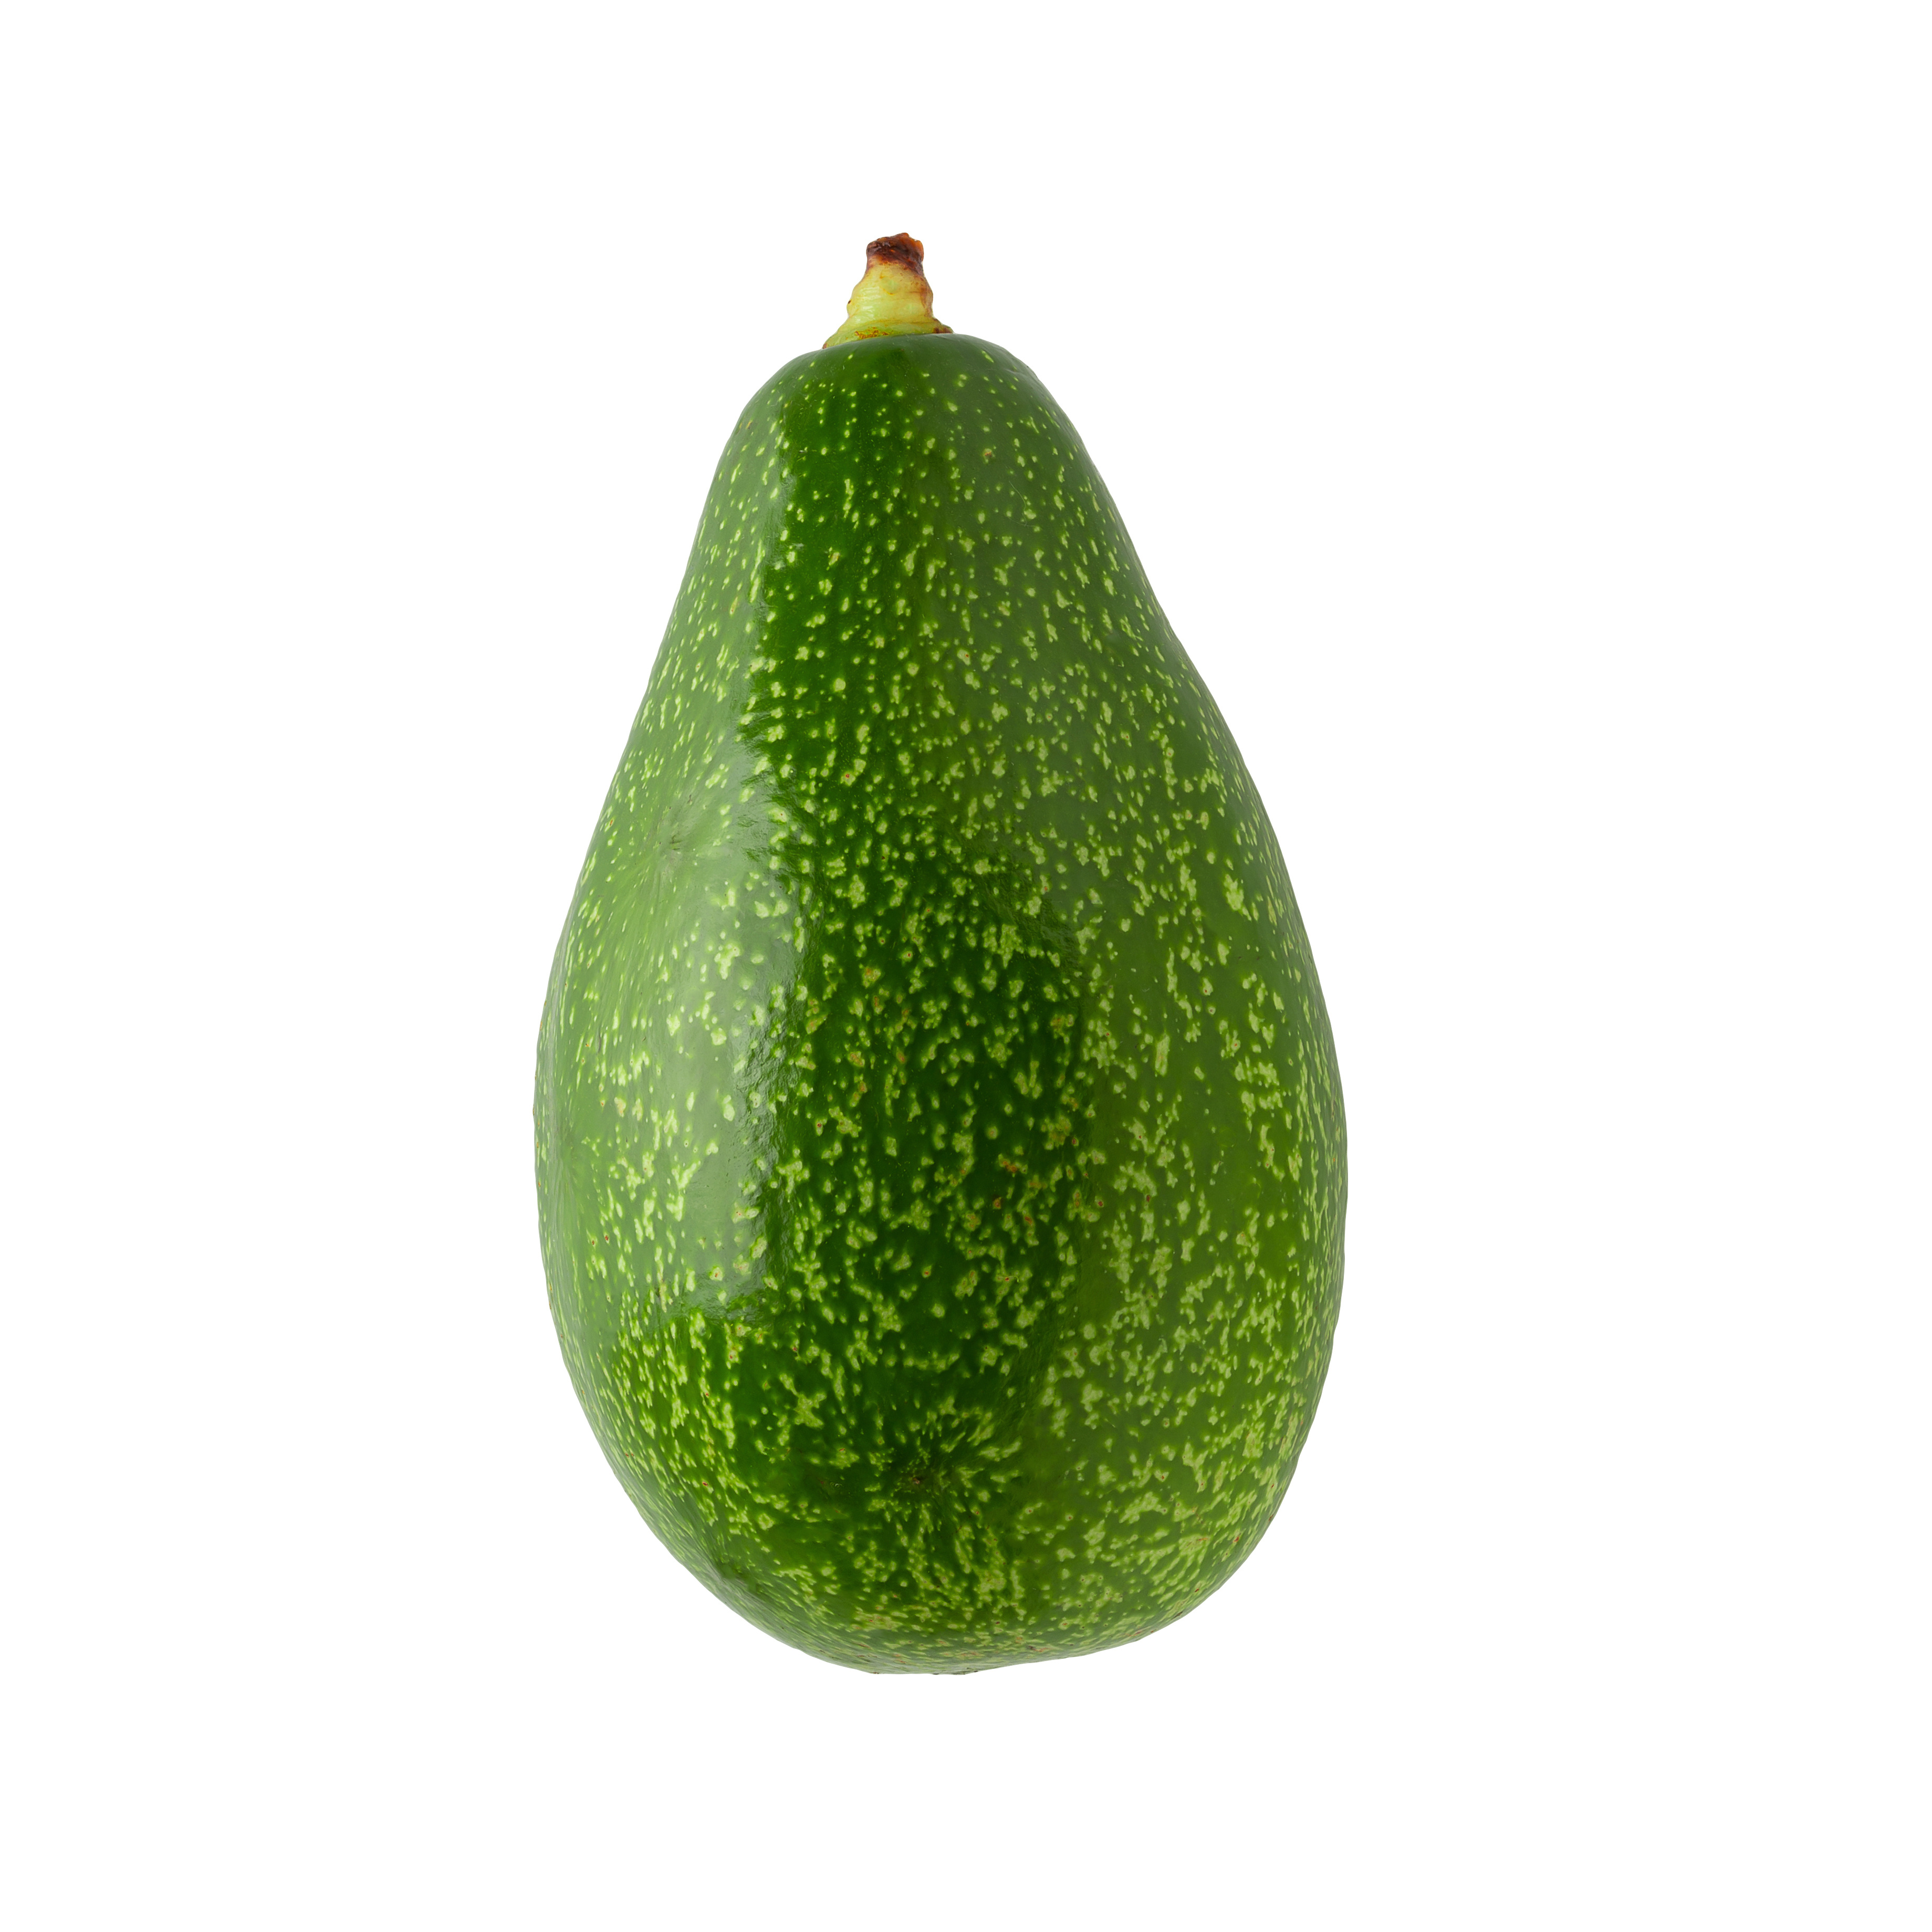 Avocado grün Stück